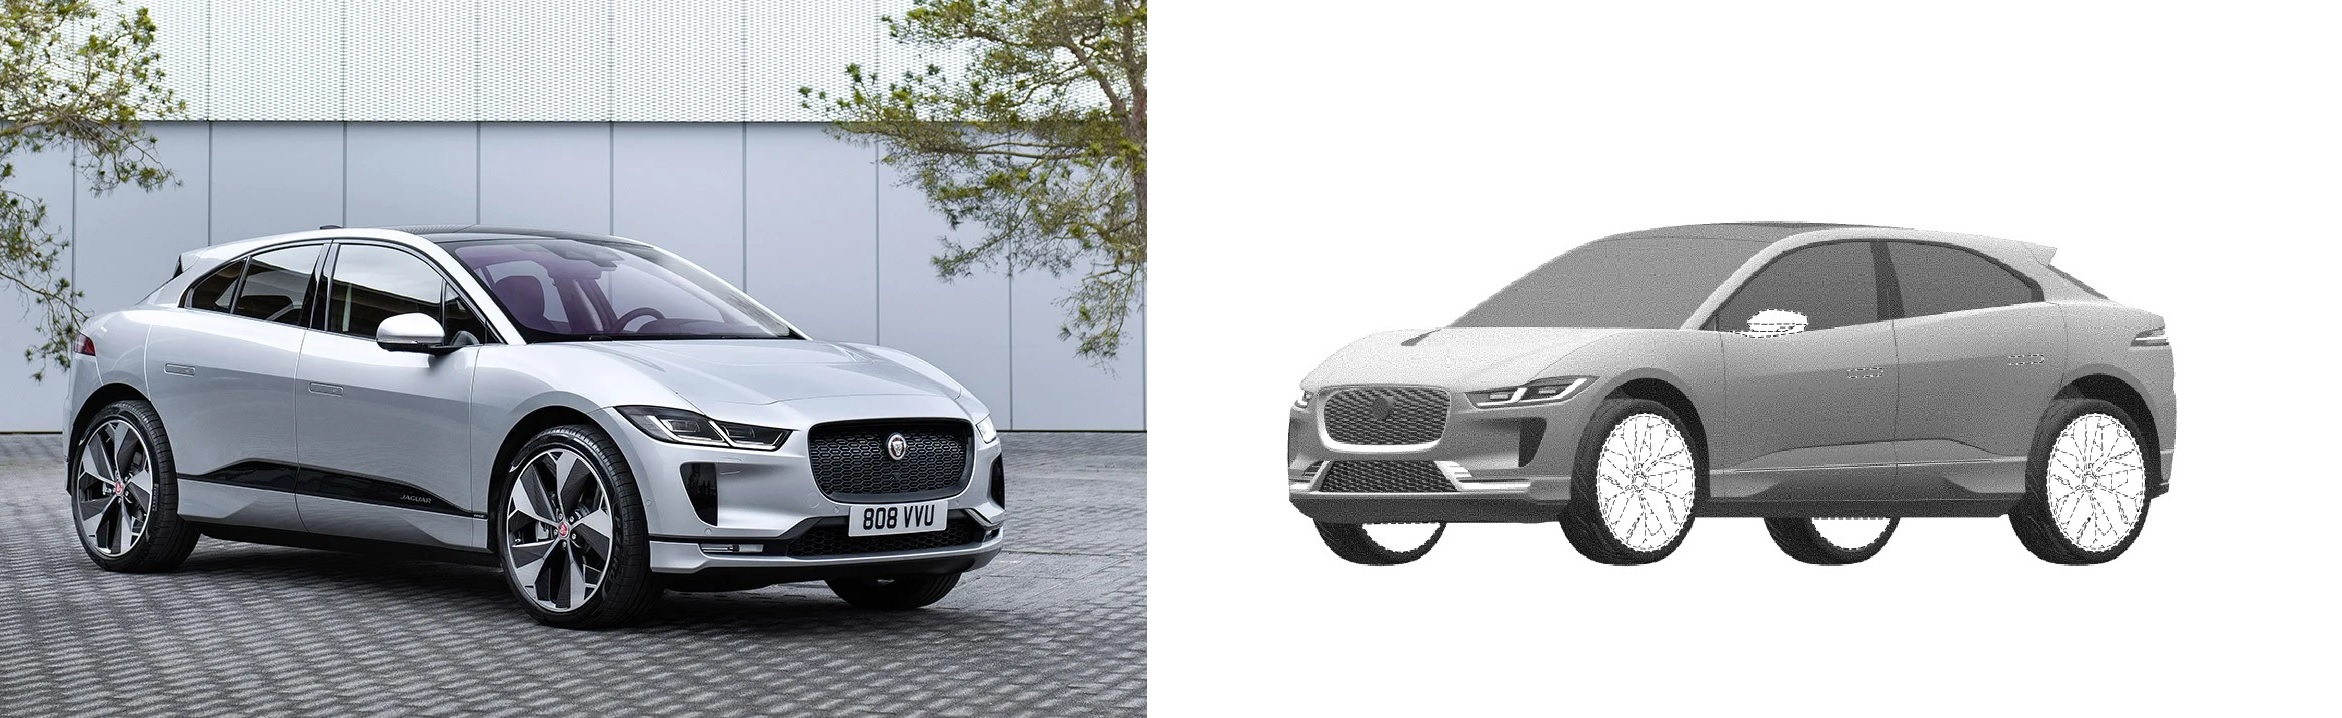 Cambios entre las imágenes de la patente y el actual Jaguar I-Pace eléctrico.